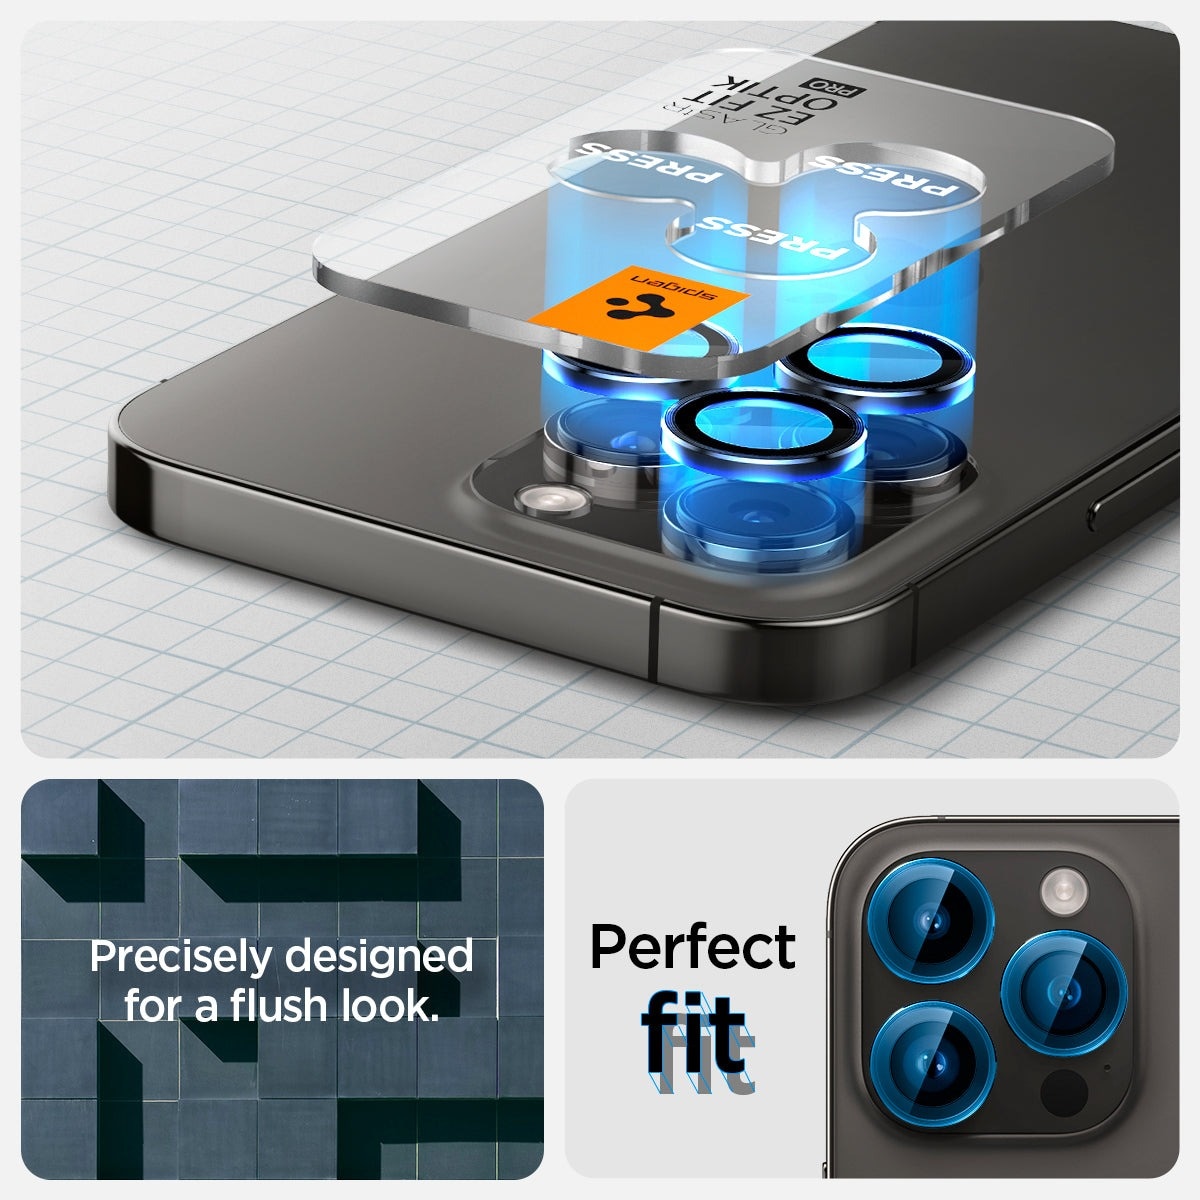 EZ Fit Optik Pro Lens Protector iPhone 15 Pro (2 piezas) Black